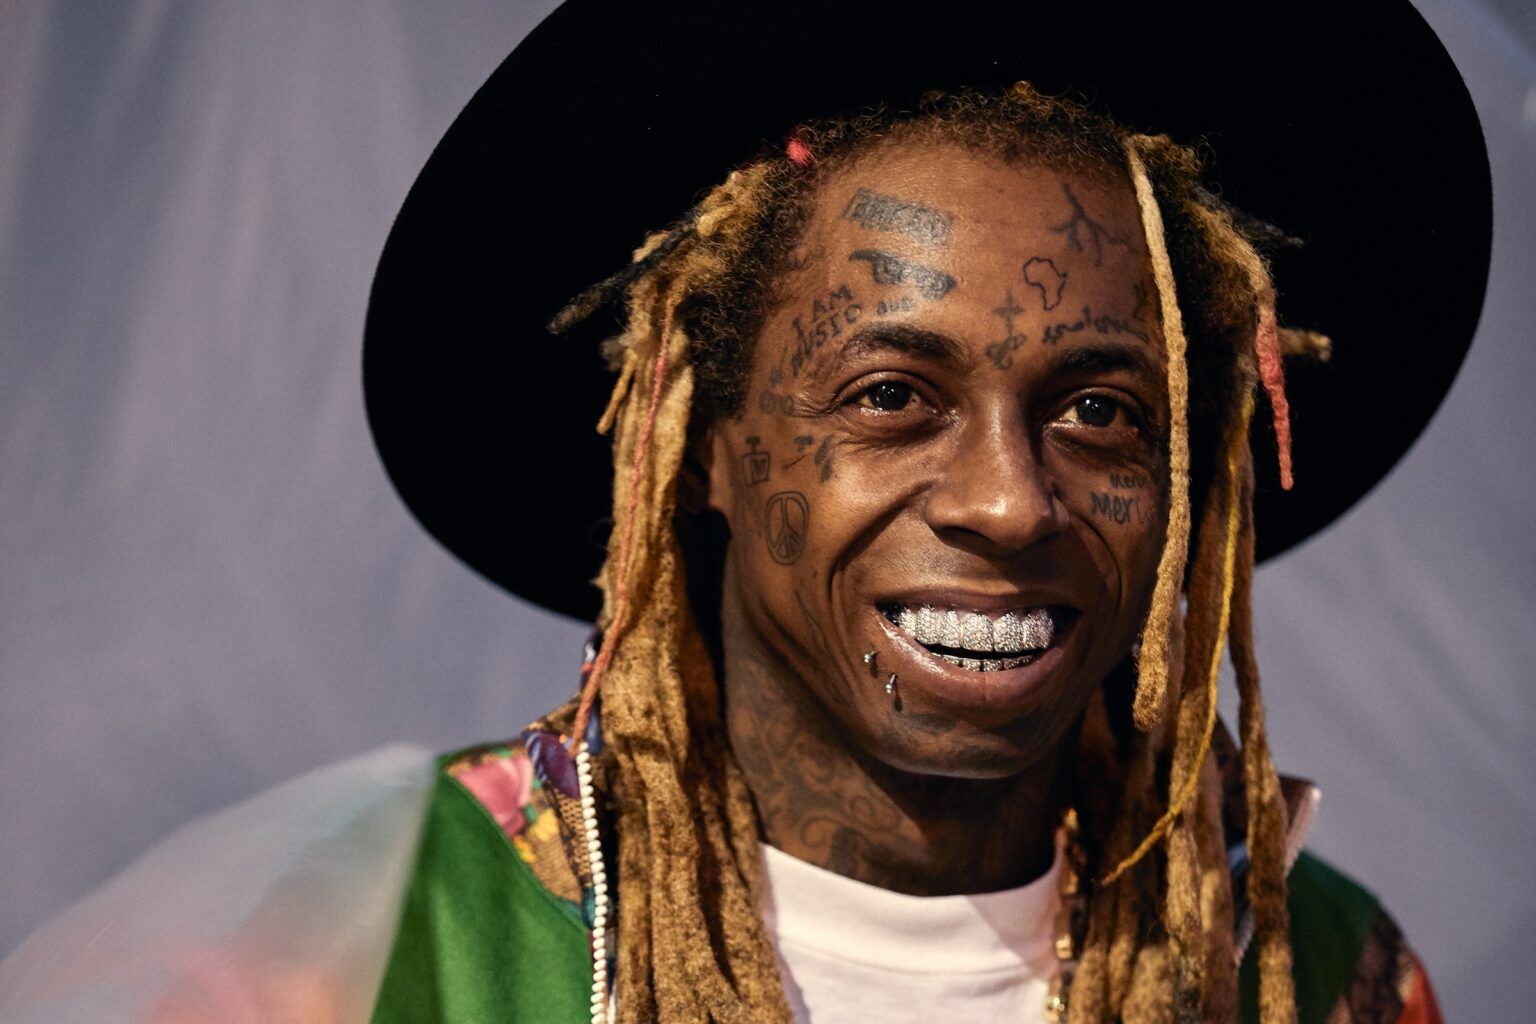 Melhores músicas do Lil Wayne conheça 10 sucessos do astro do rap